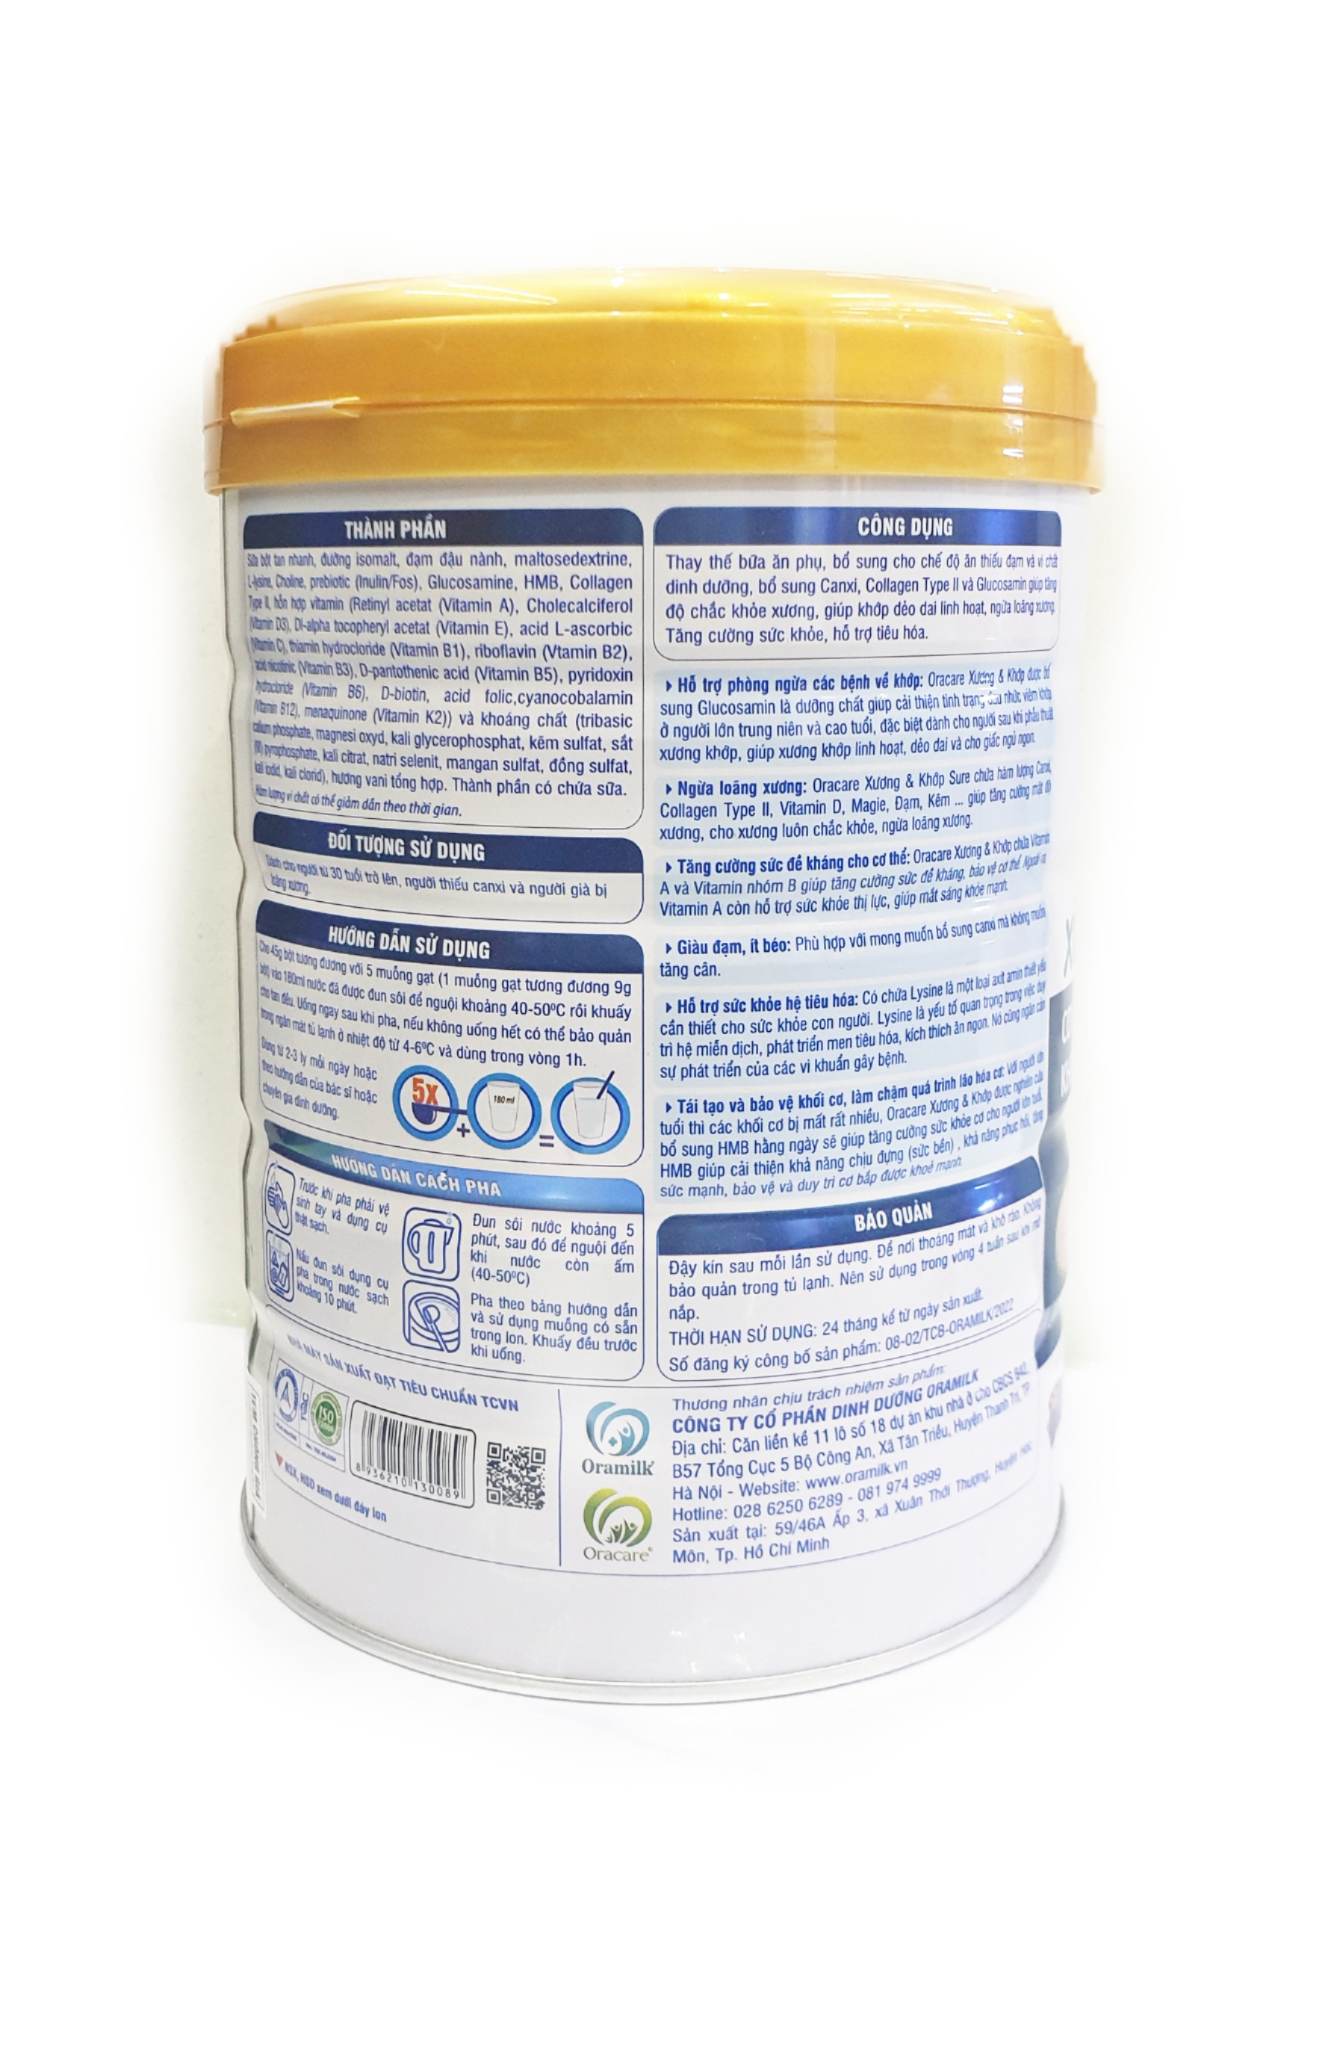 Sữa OraCare XƯƠNG & KHỚP lon 900g - Sữa dinh dưỡng cho người cần bổ sung canxi